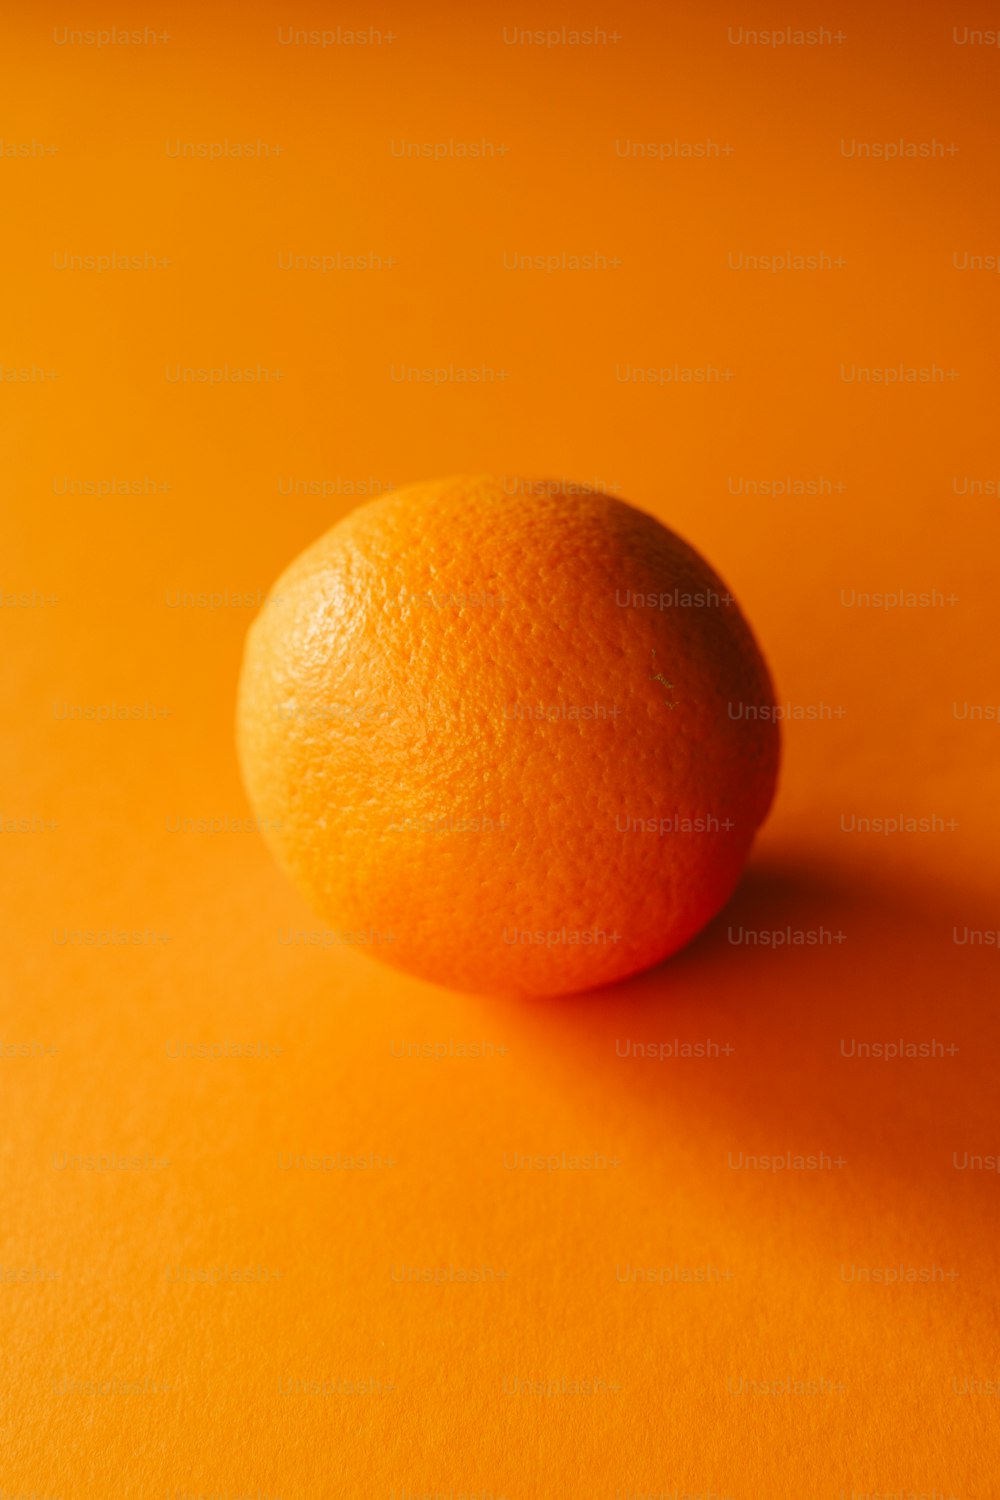 a close up of an orange